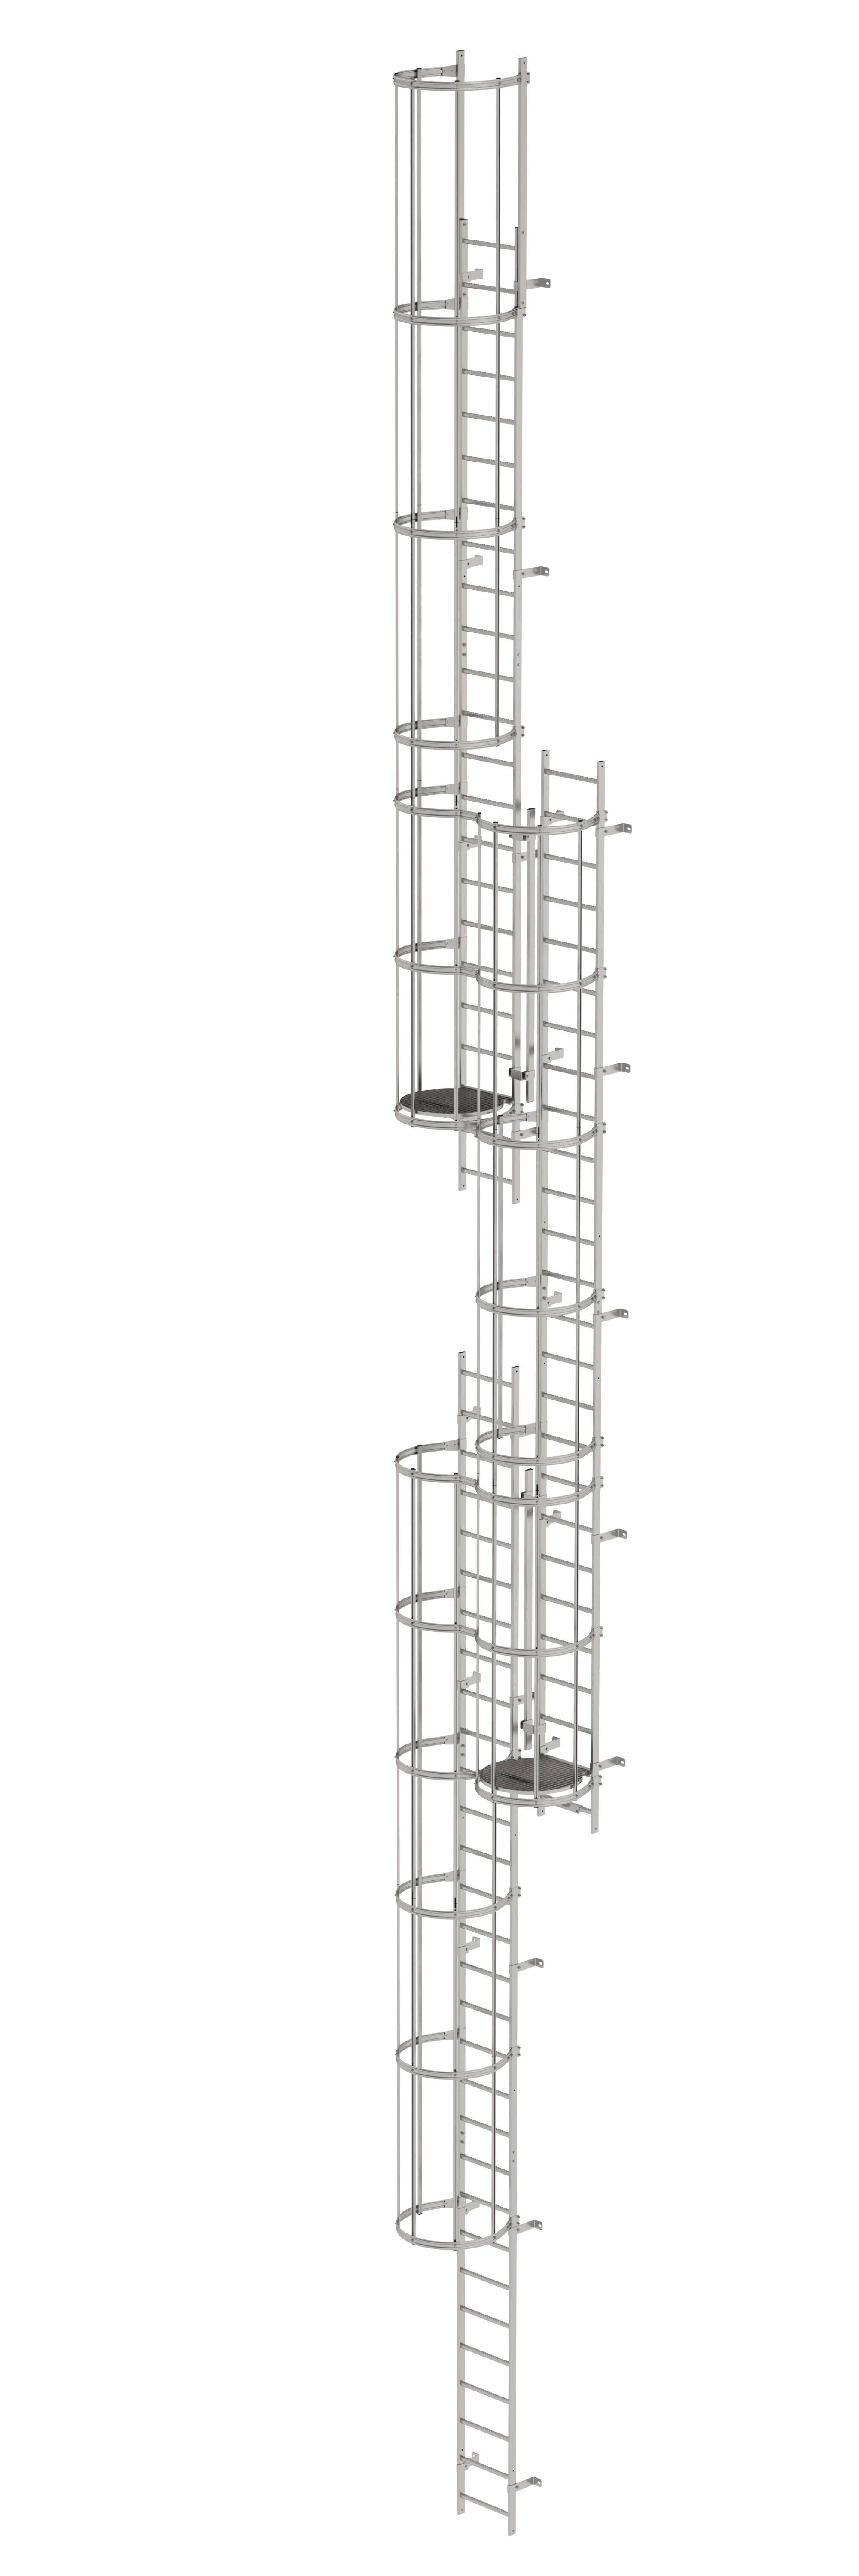 Mehrzügige Steigleiter mit Rückenschutz (Maschinen) Edelstahl 17,16m